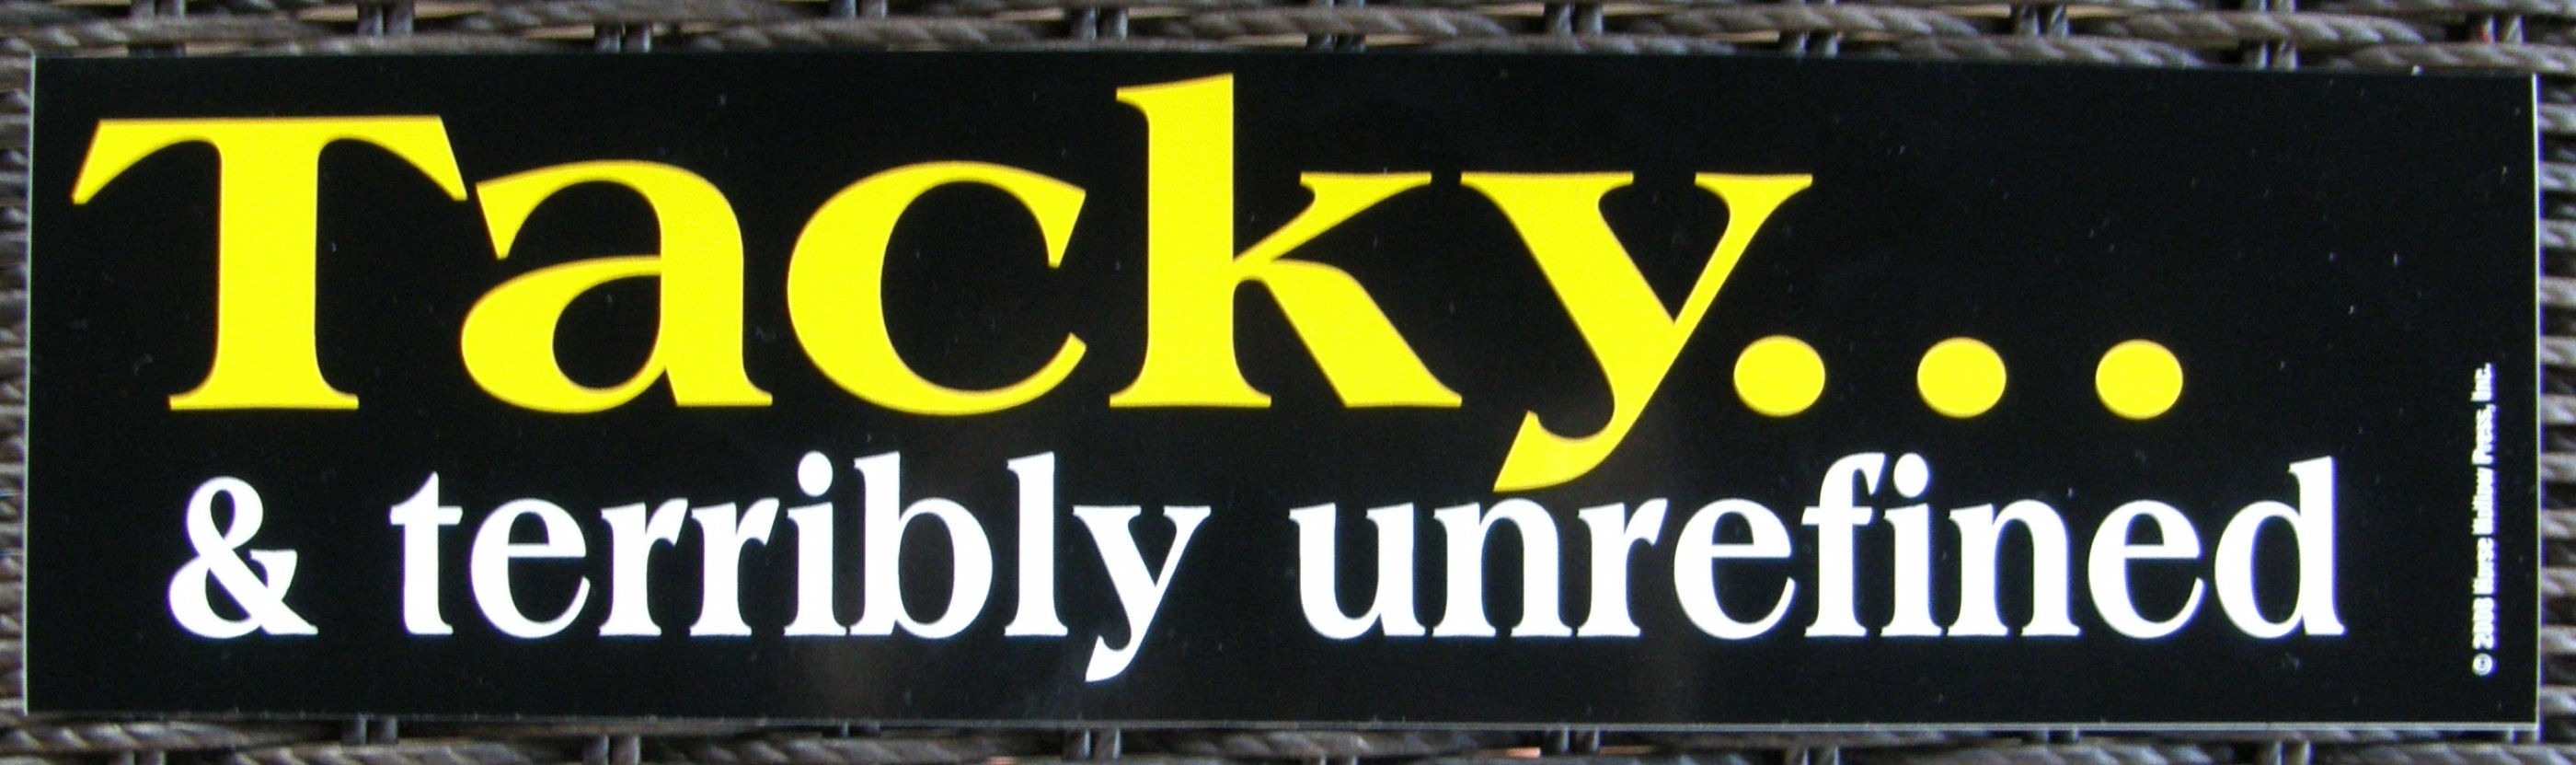 Tacky & terribly unrefined Horse Bumper Sticker